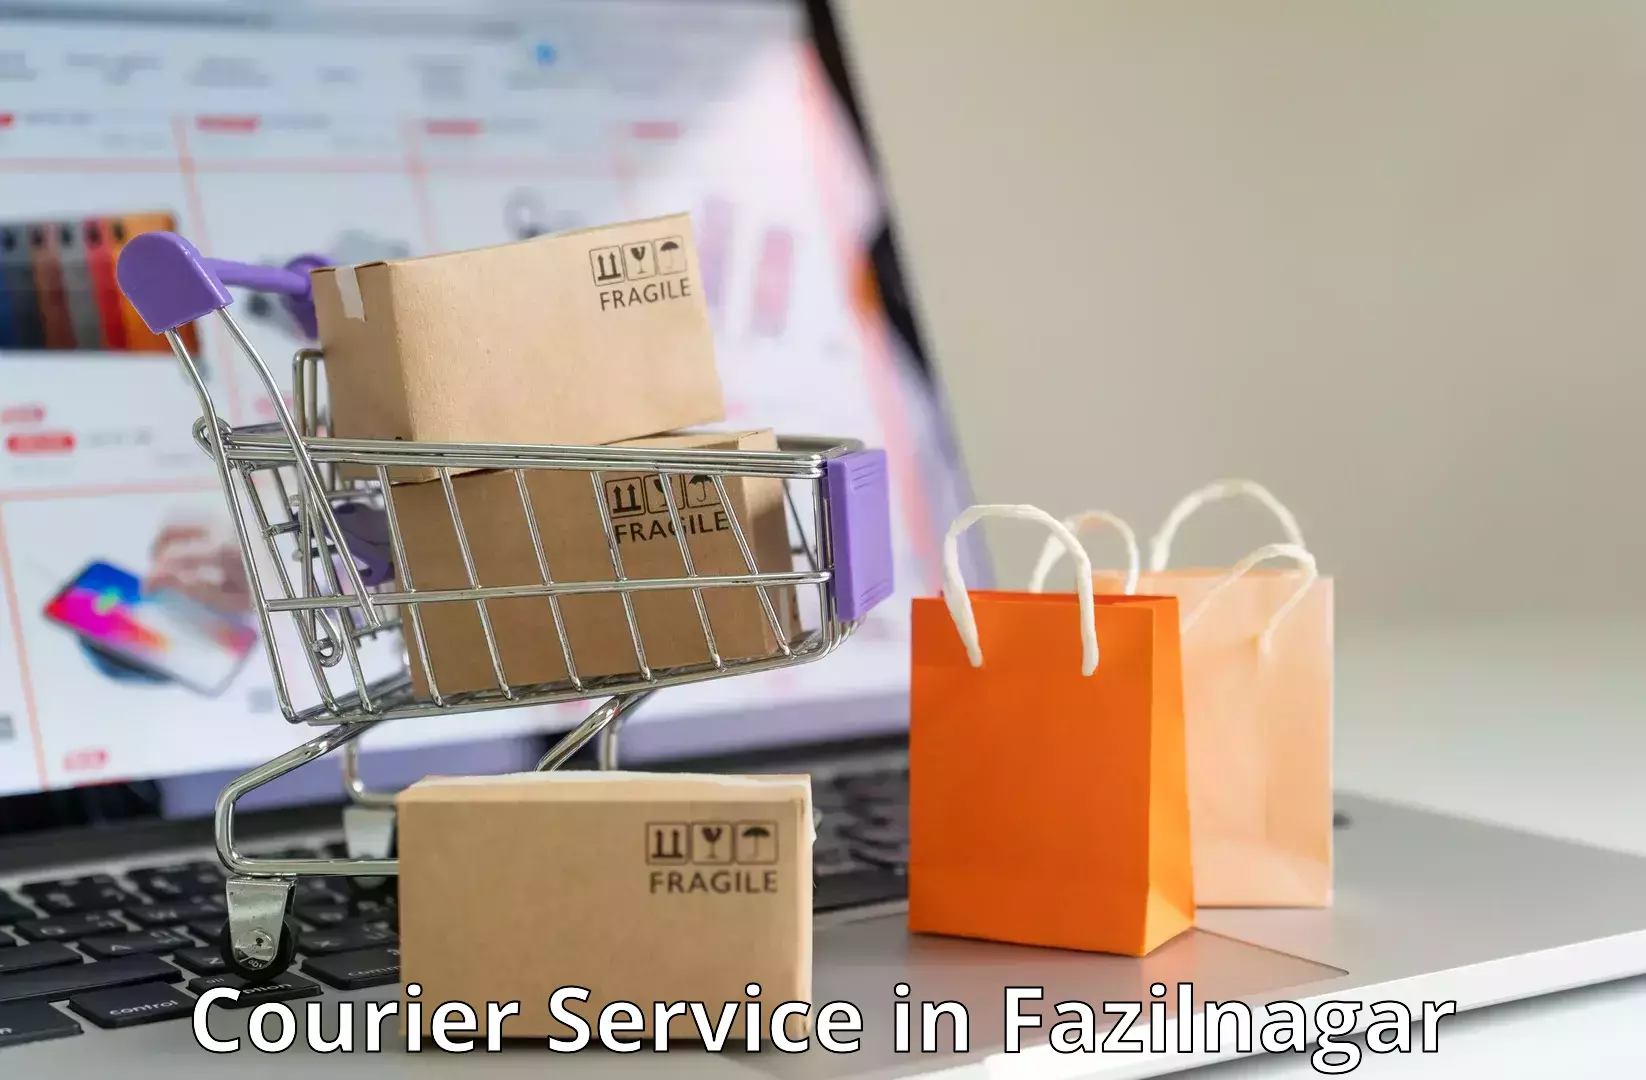 Business shipping needs in Fazilnagar